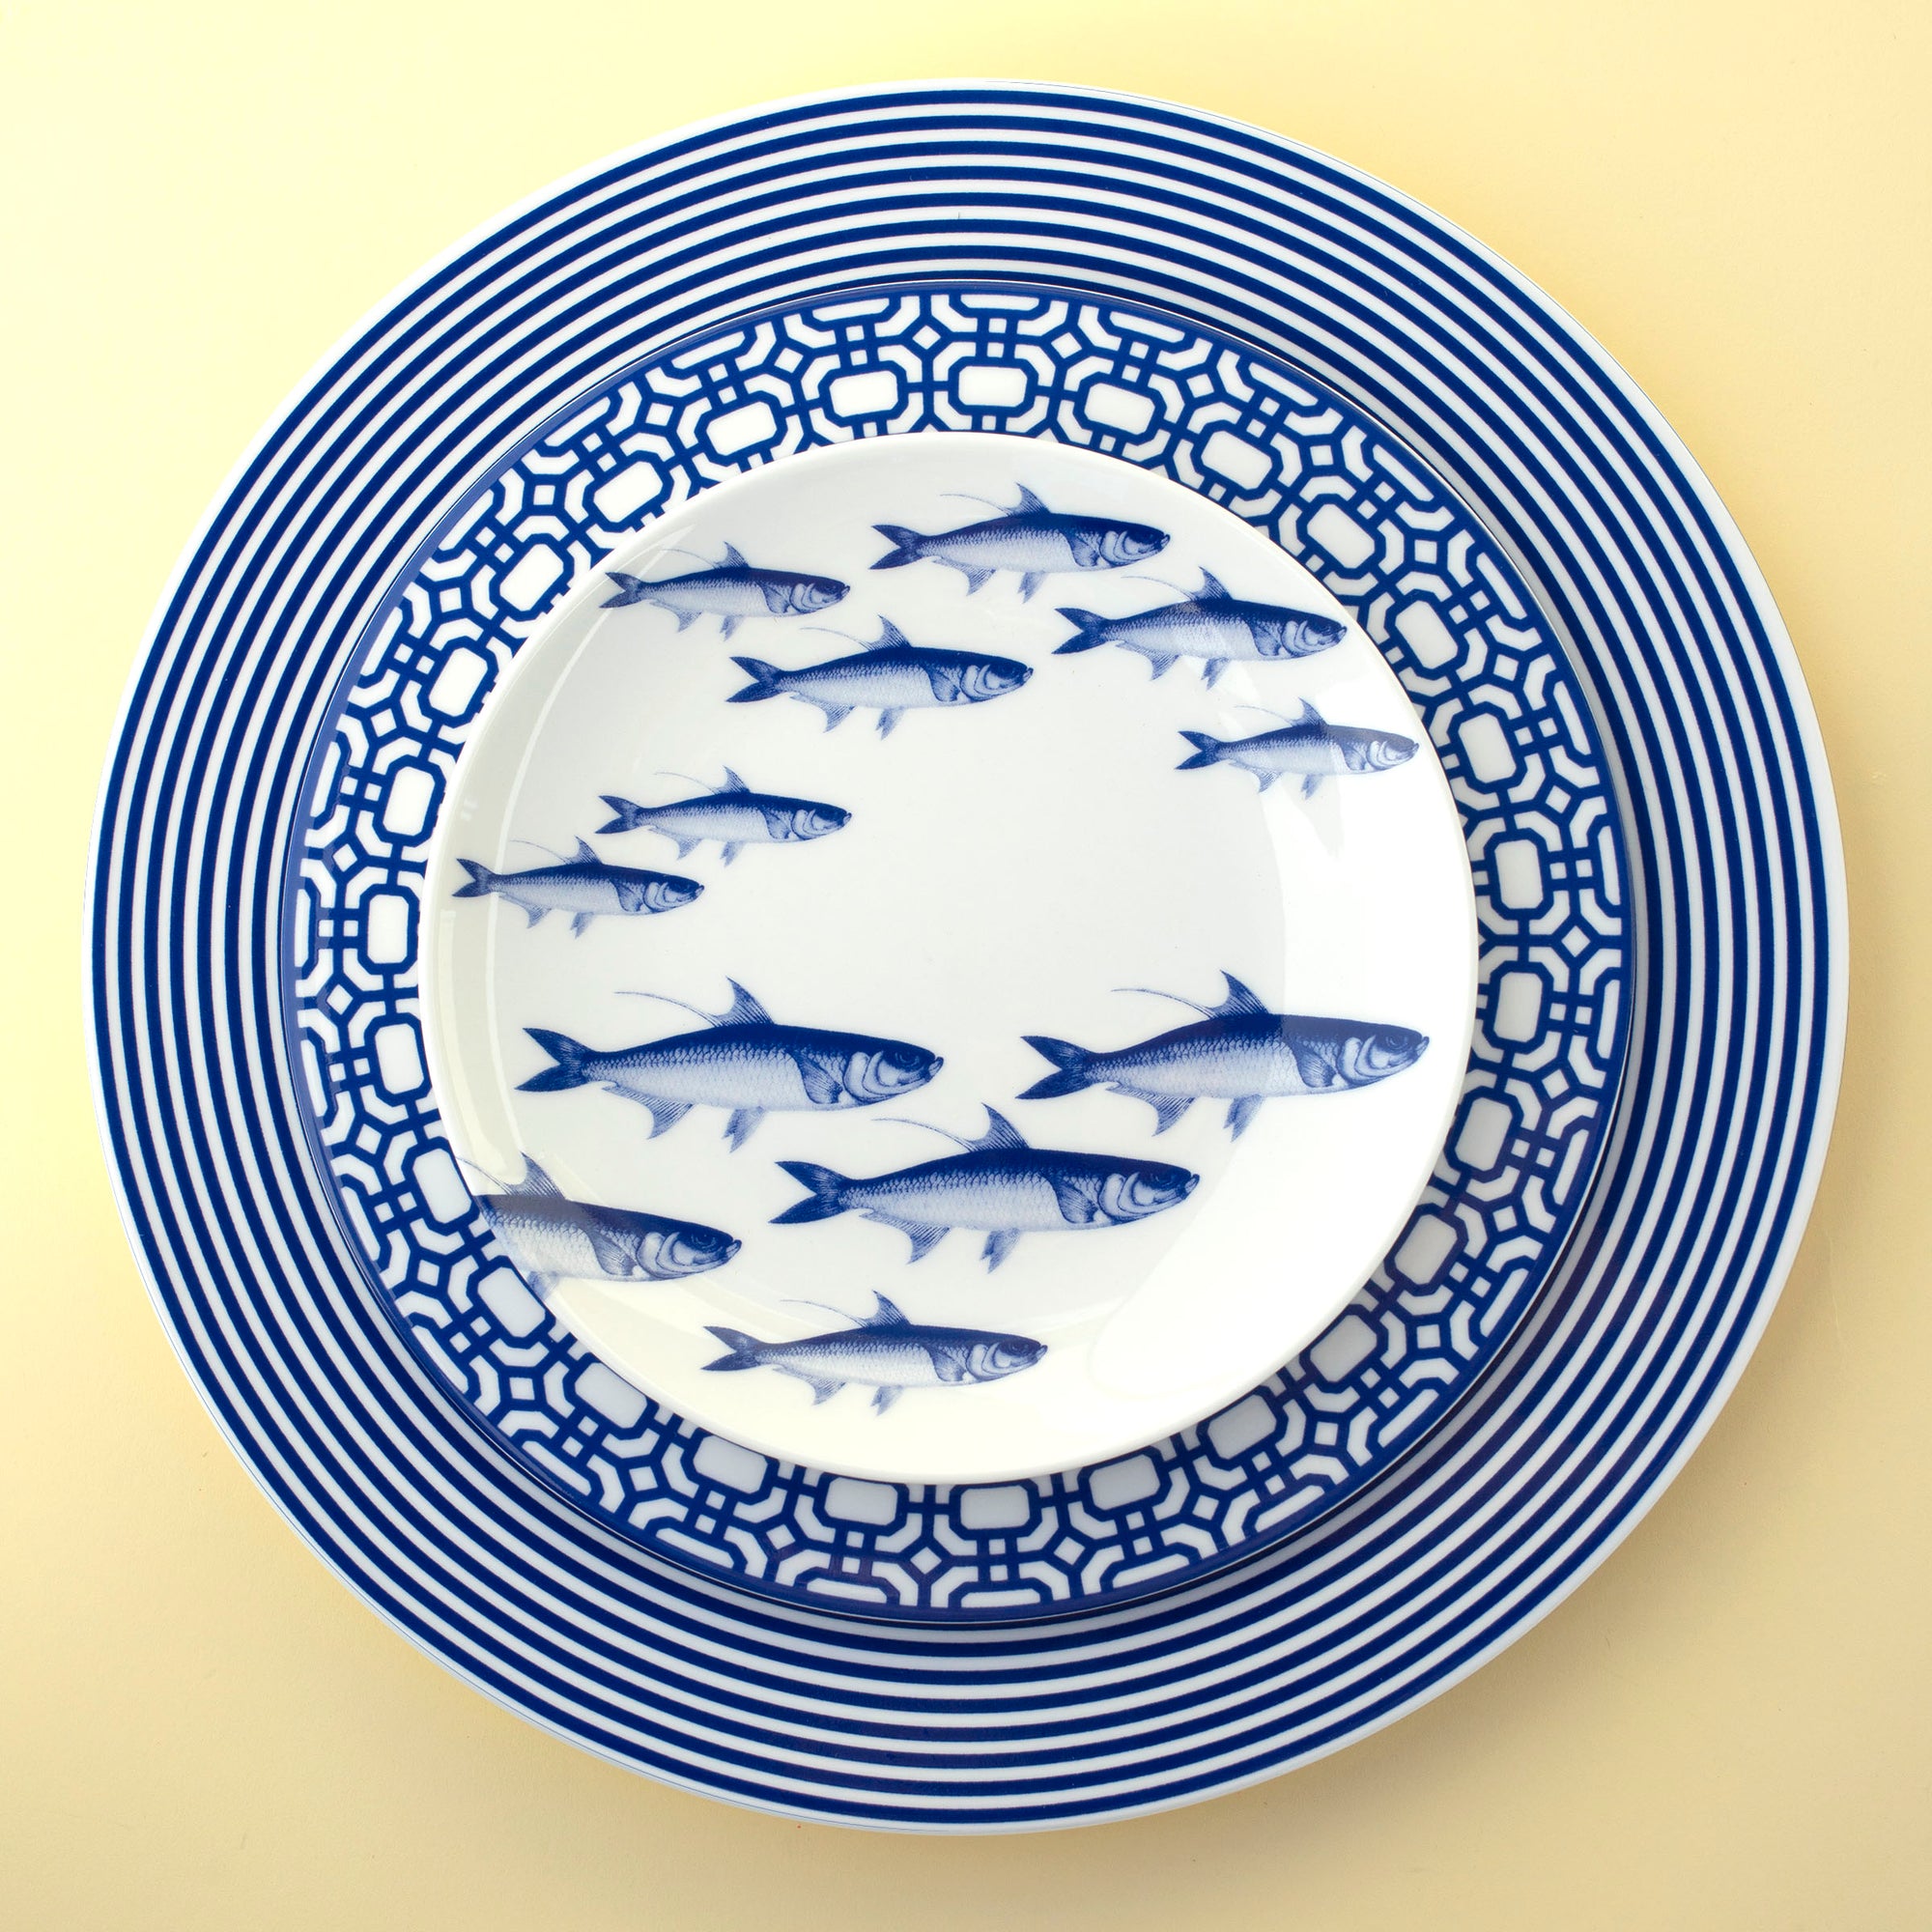 School of Fish Canapé Plates Boxed Set/4 - Caskata